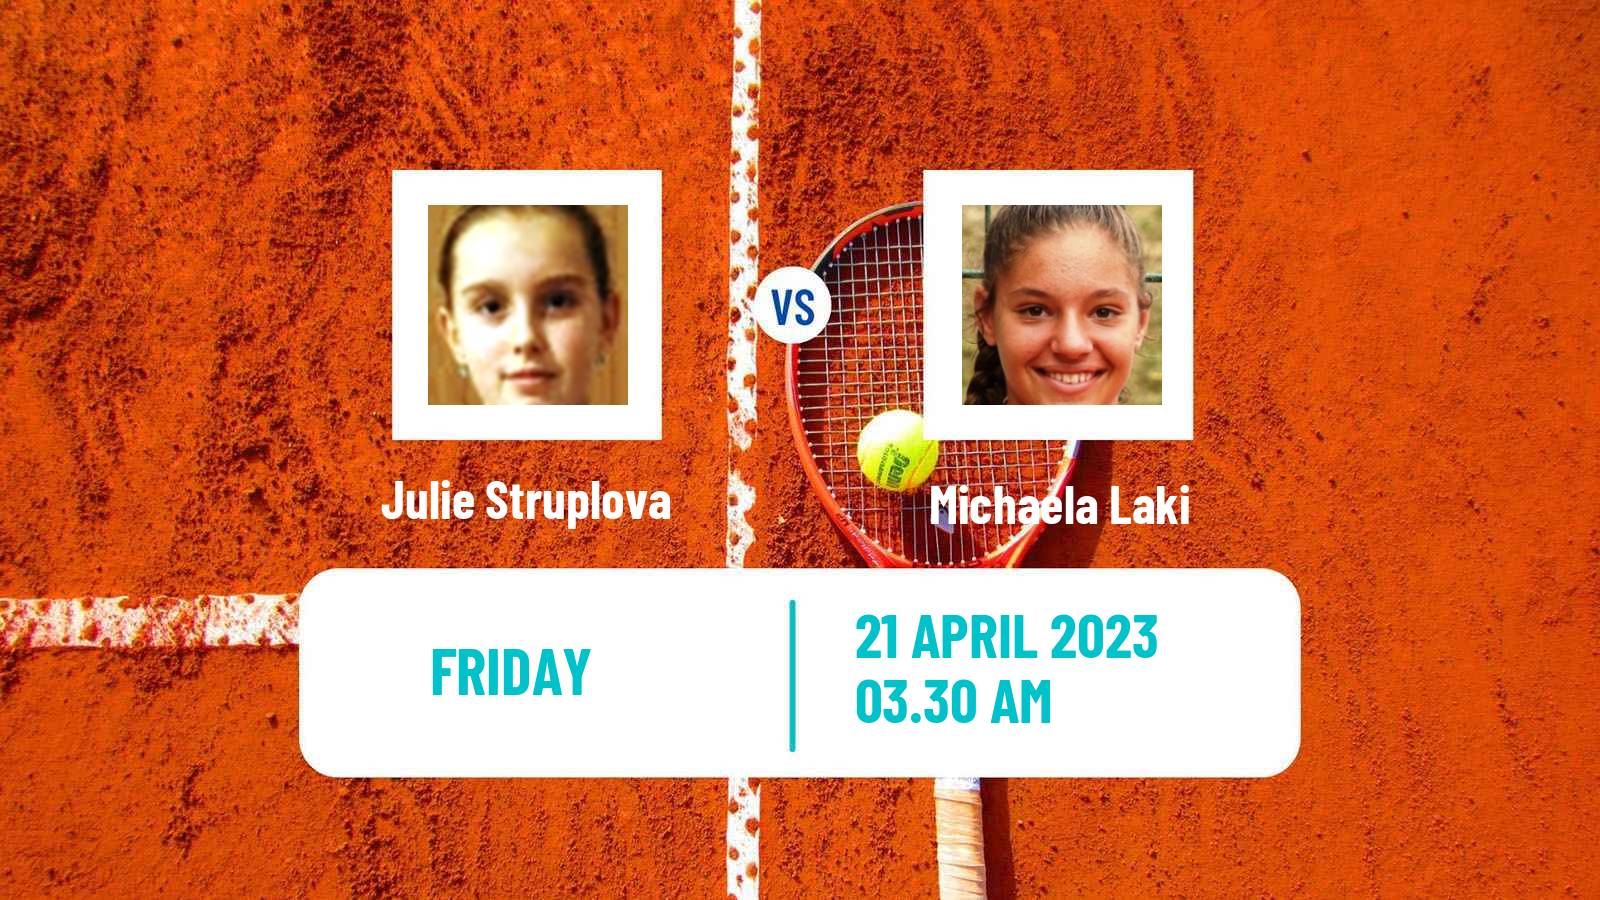 Tennis ITF Tournaments Julie Struplova - Michaela Laki